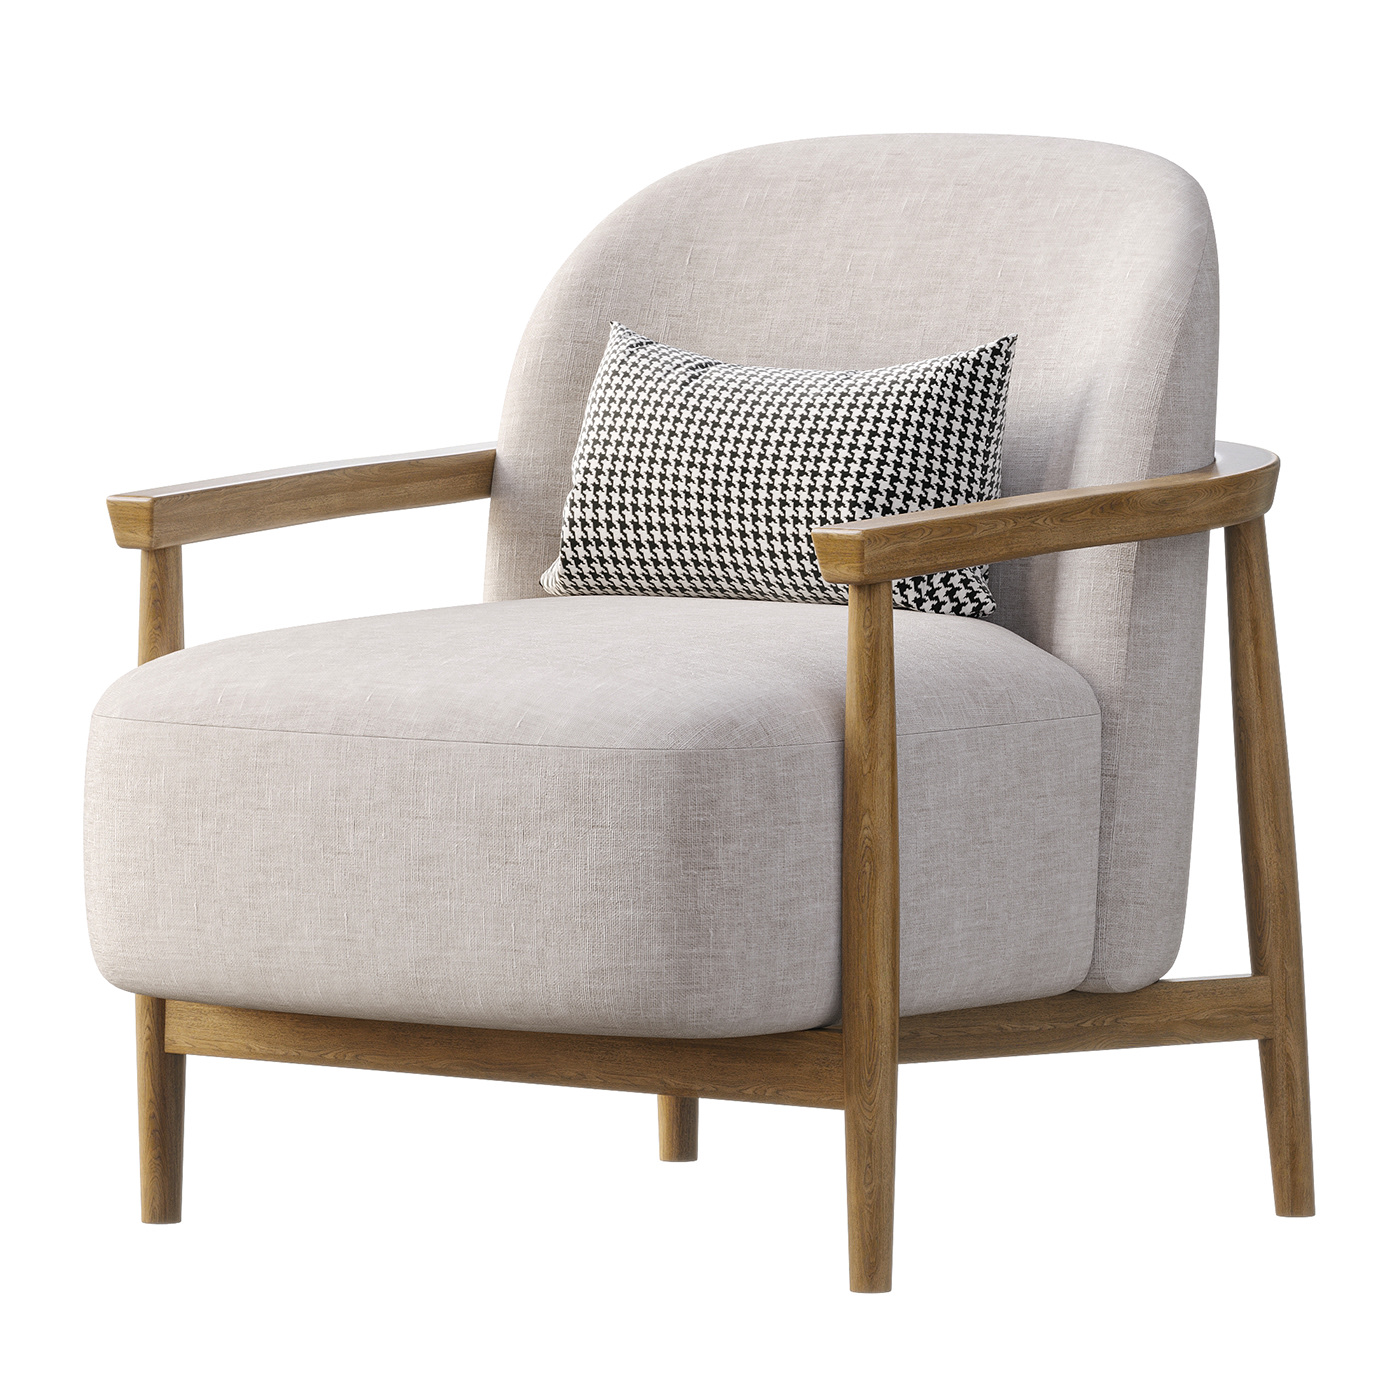 Casper lounge Lounge Chair wooden Scandinavian